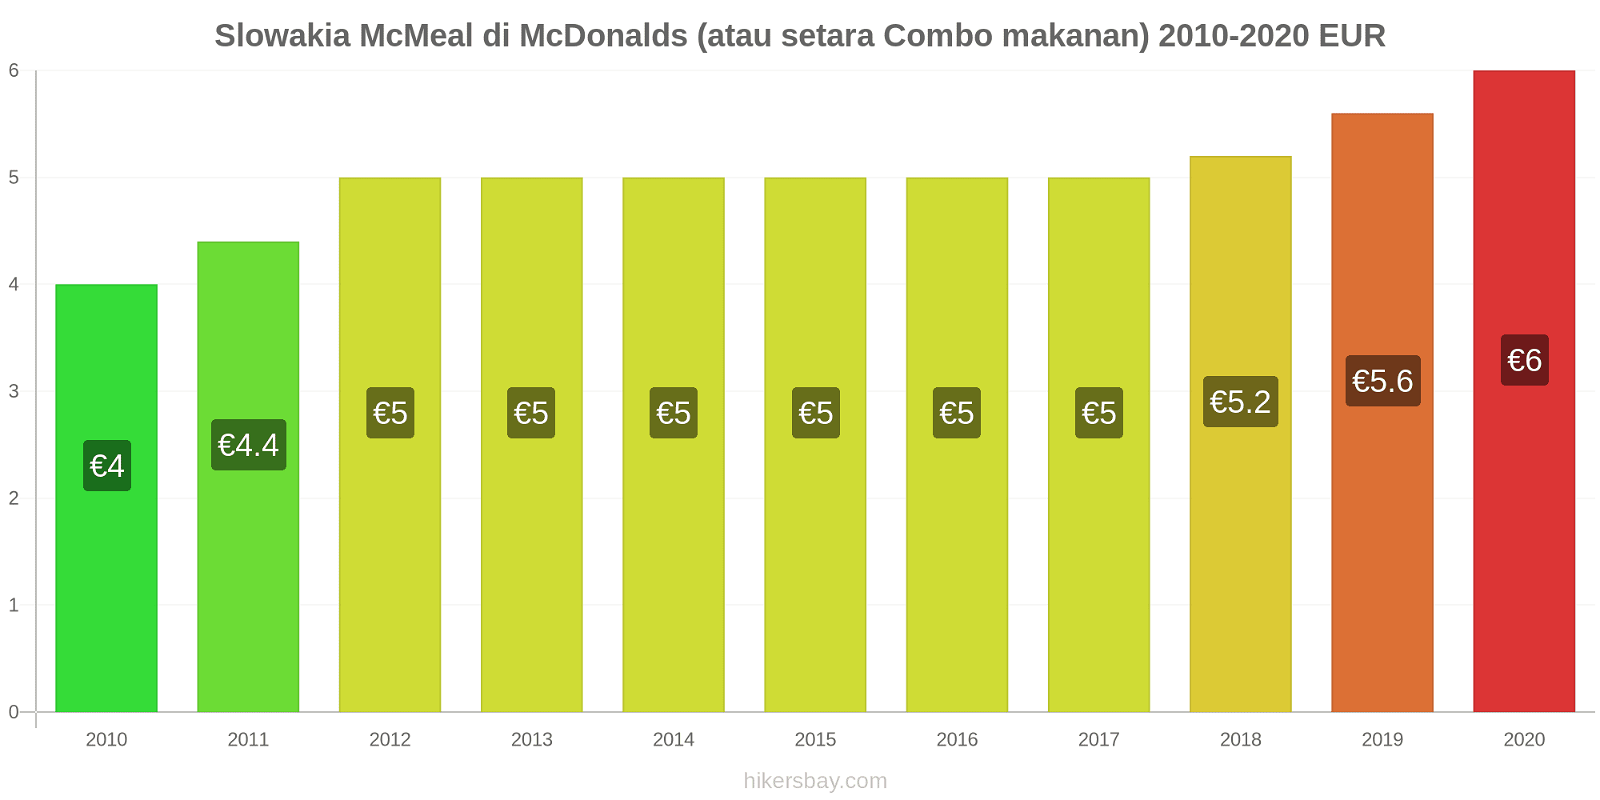 Slowakia perubahan harga McMeal di McDonalds (atau setara Combo makanan) hikersbay.com